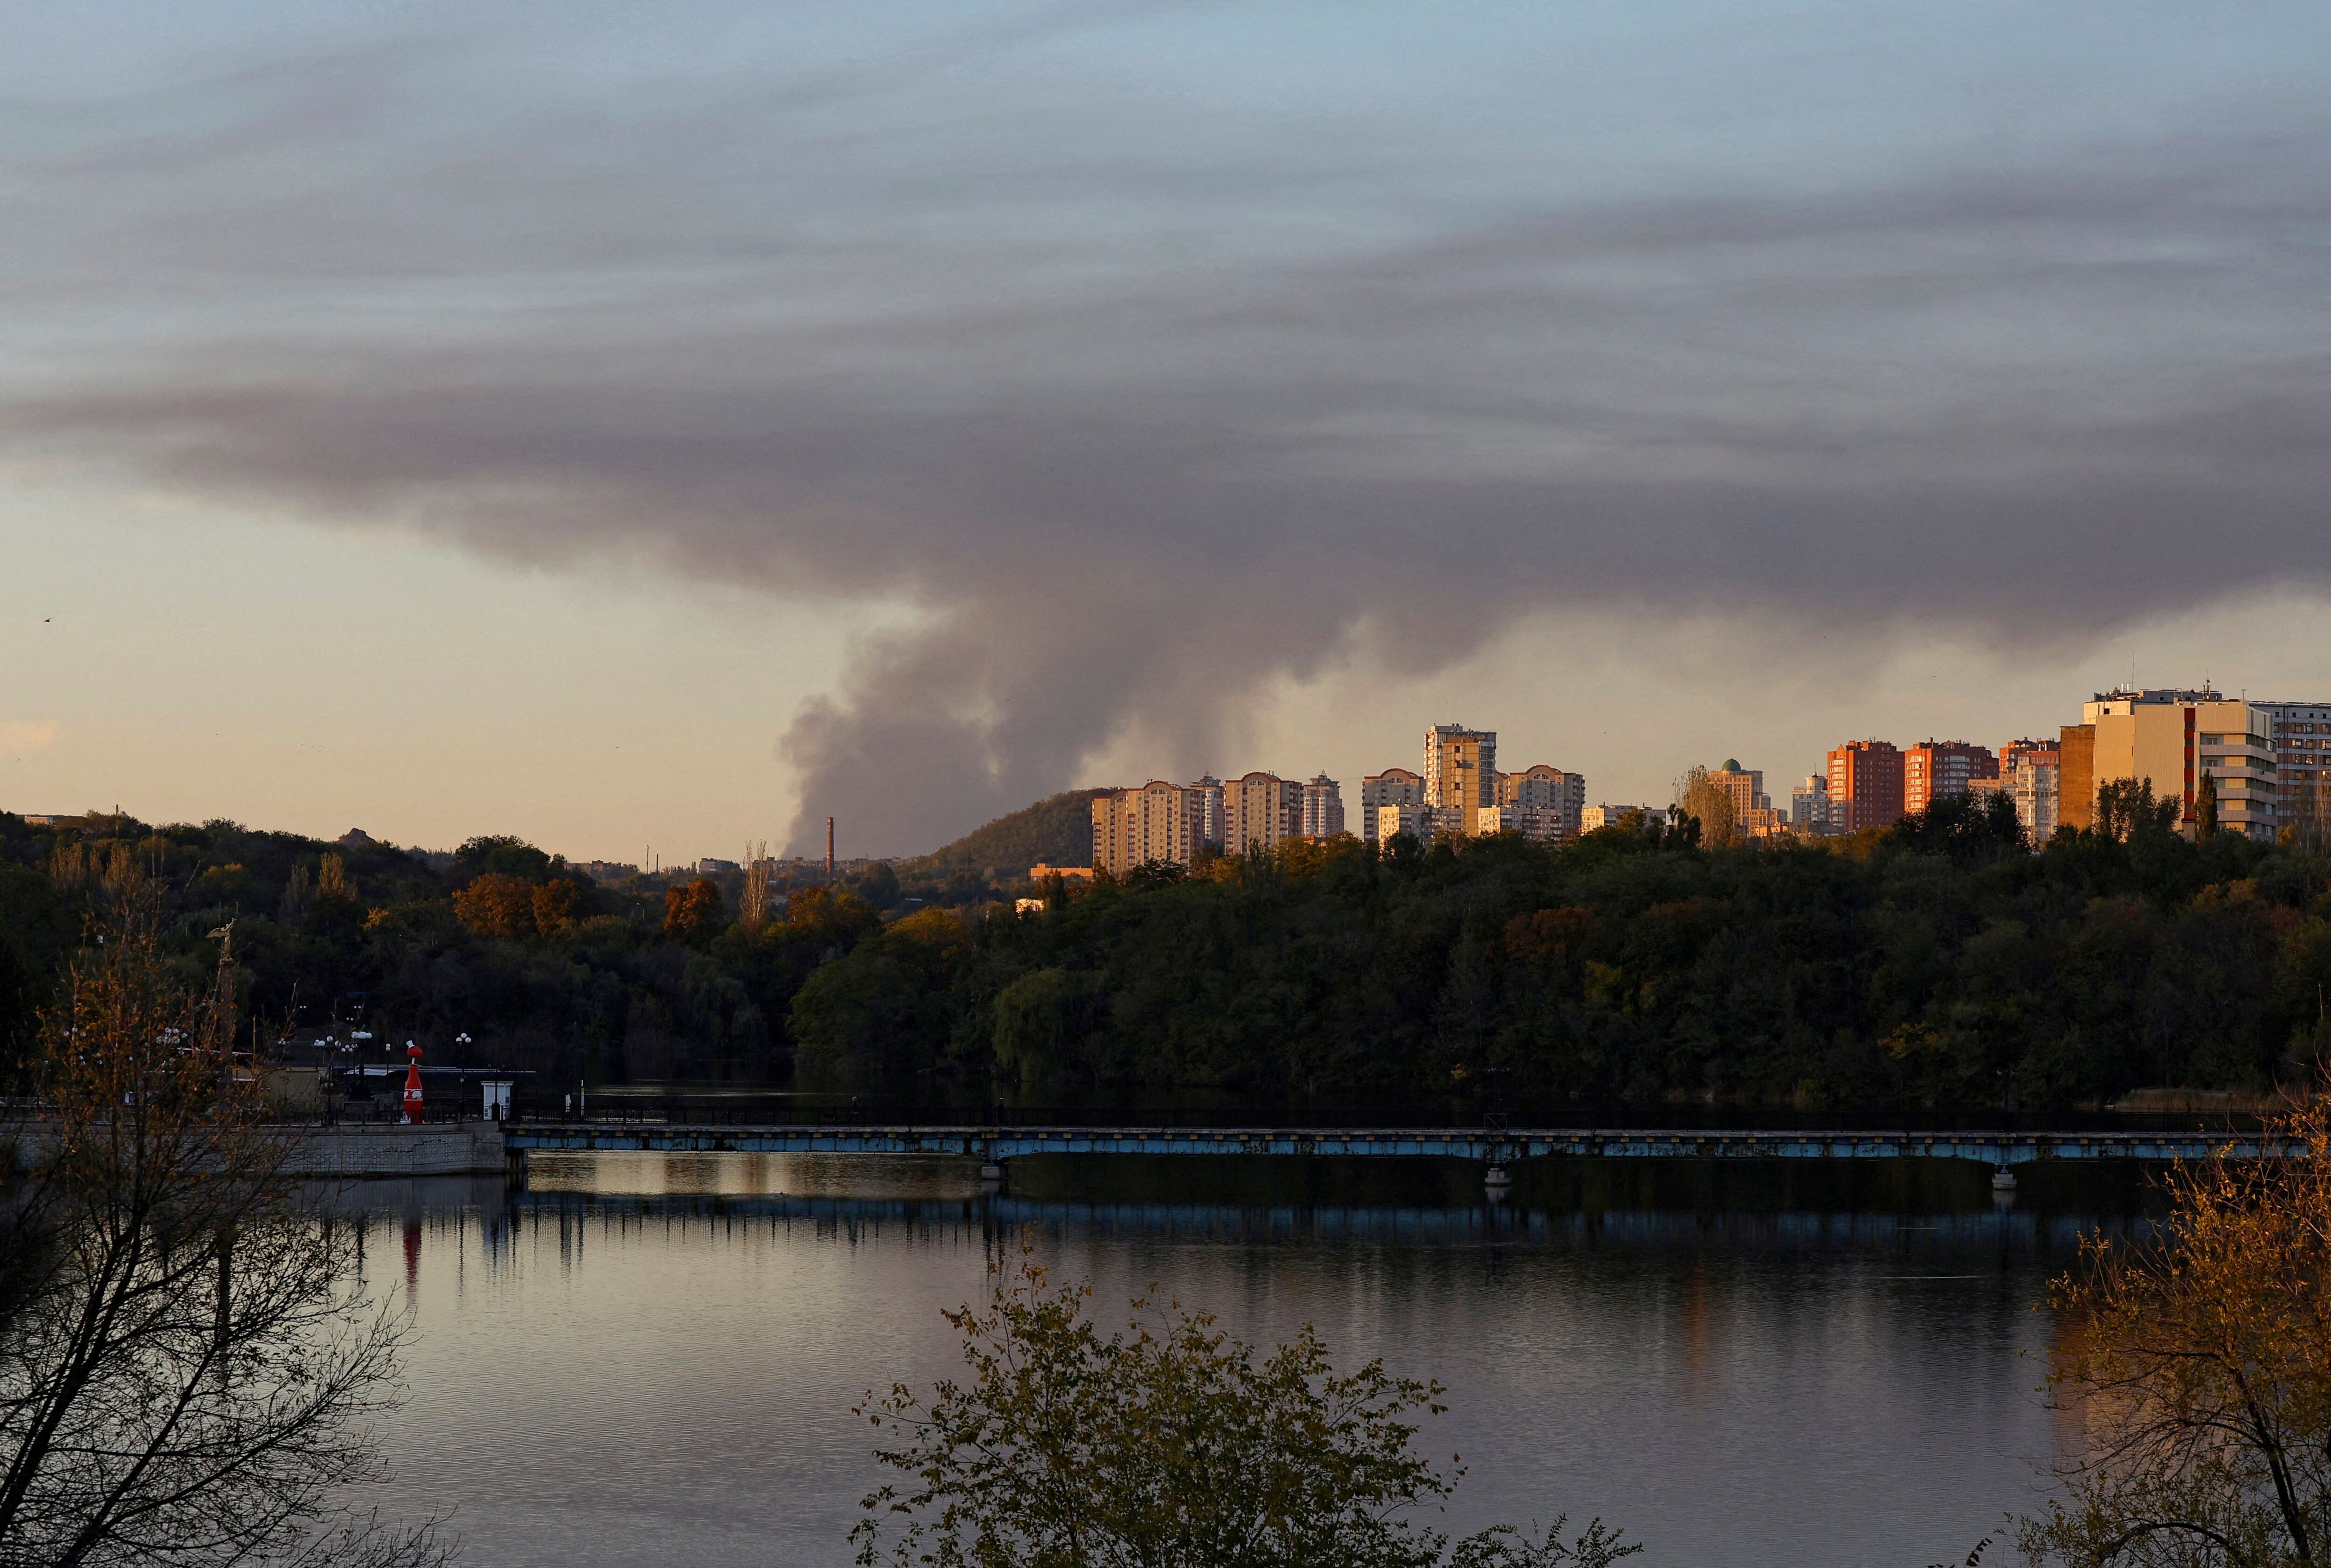 Sale humo de la zona en dirección a Avdiivka (REUTERS/Alexander Ermochenko)